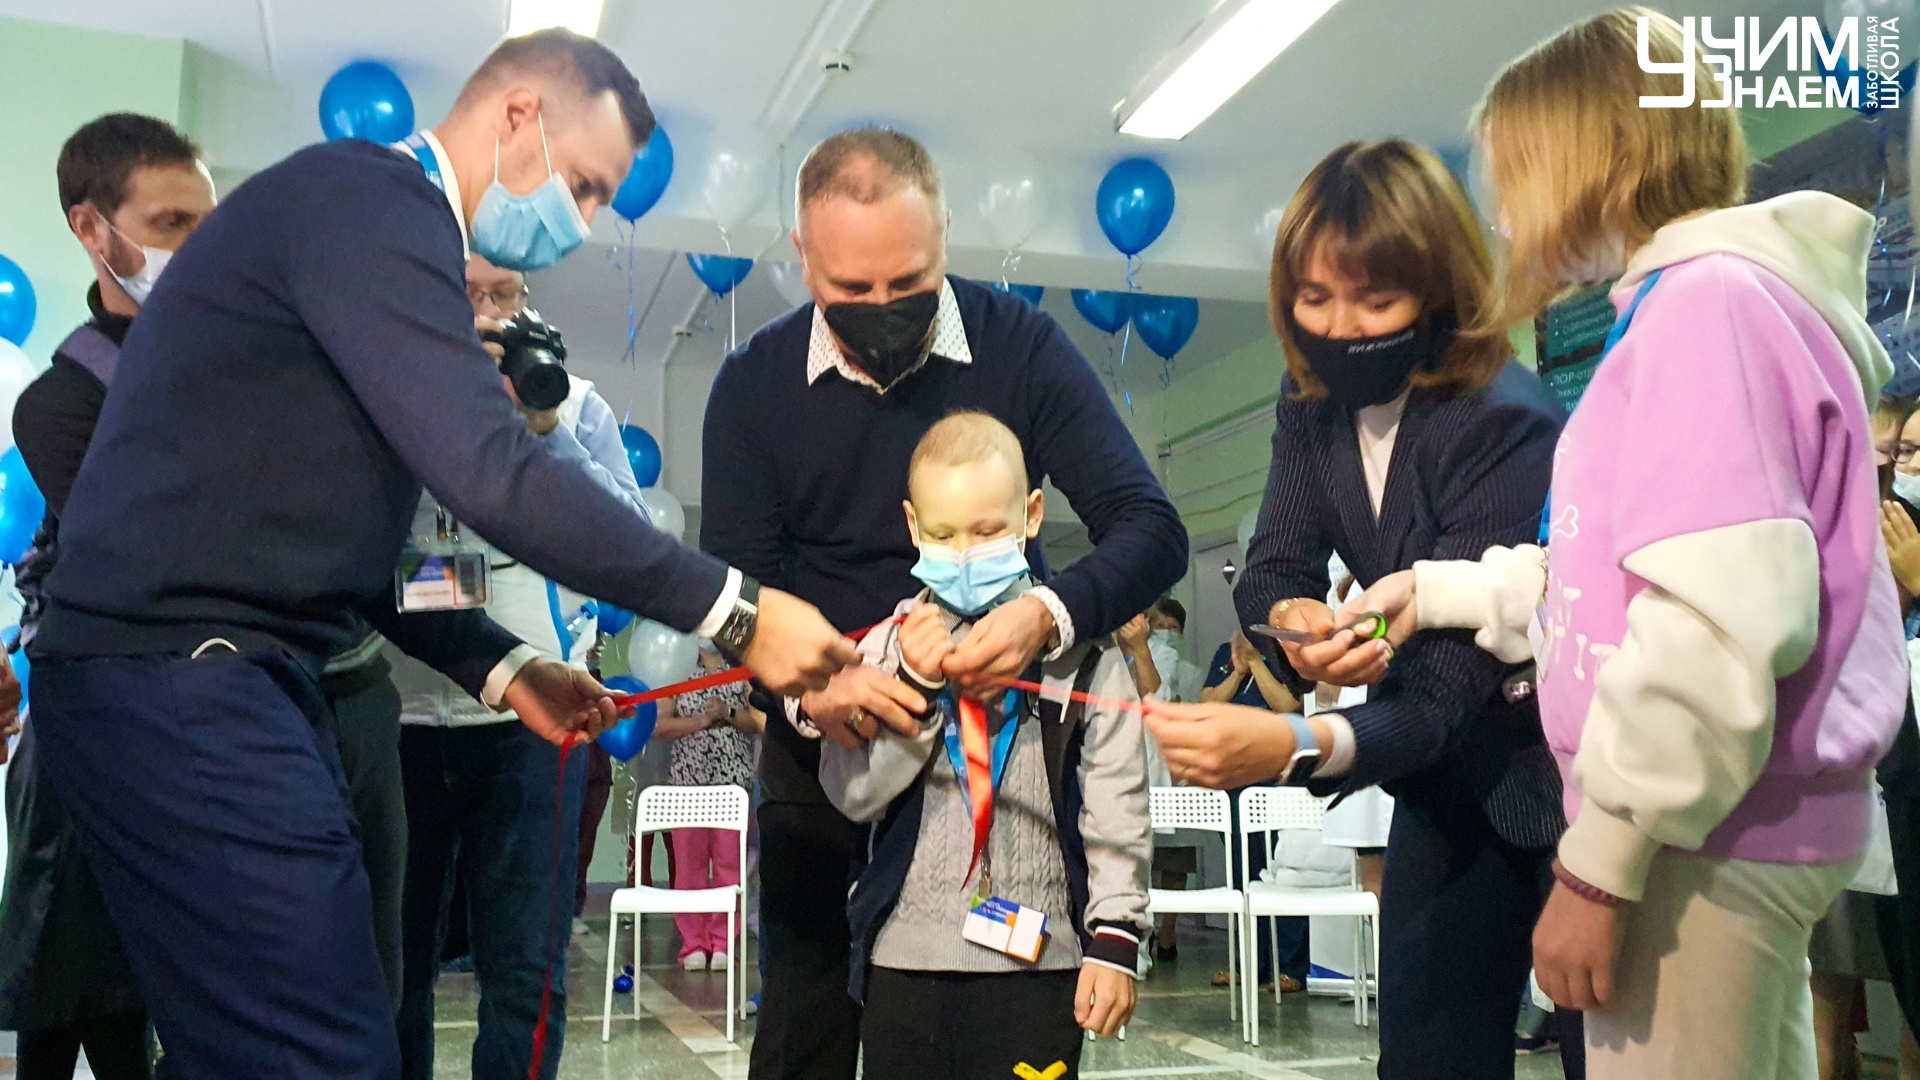 Сегодня состоялось открытие региональной площадки «УчимЗнаем» в Нижегородской областной детской клинической больнице